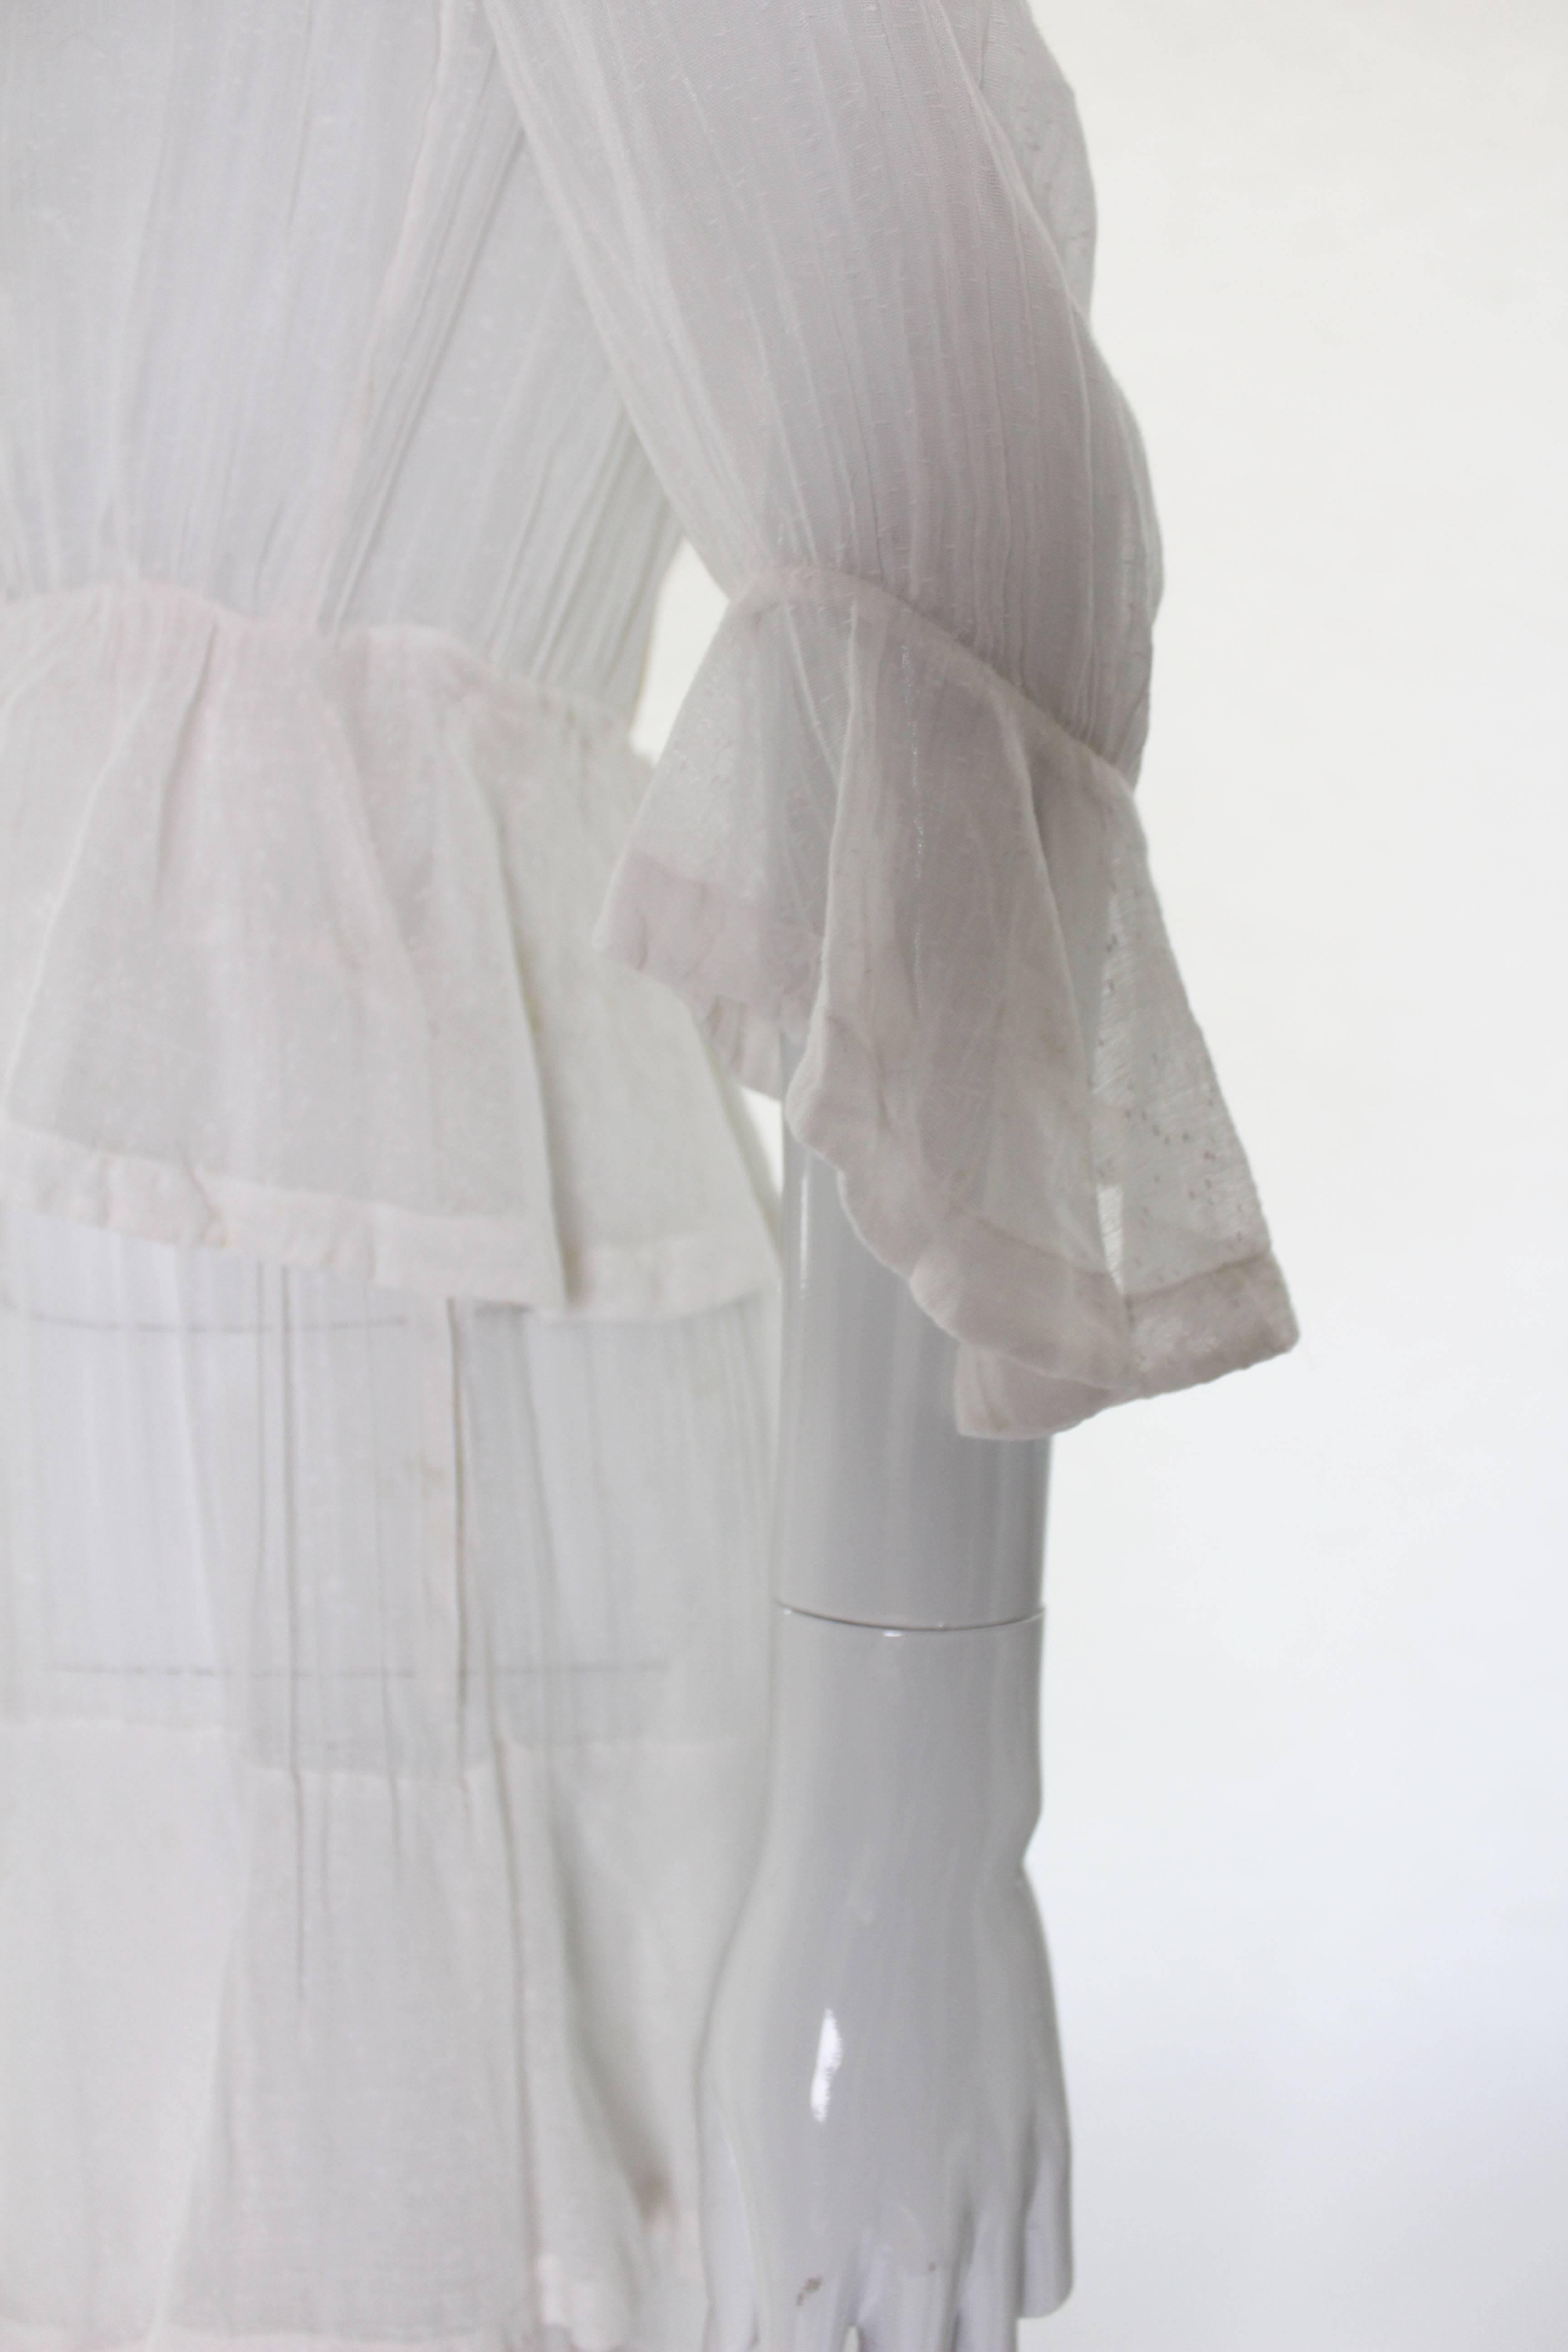 White Layered Cotton Edwardian Day Dress 1